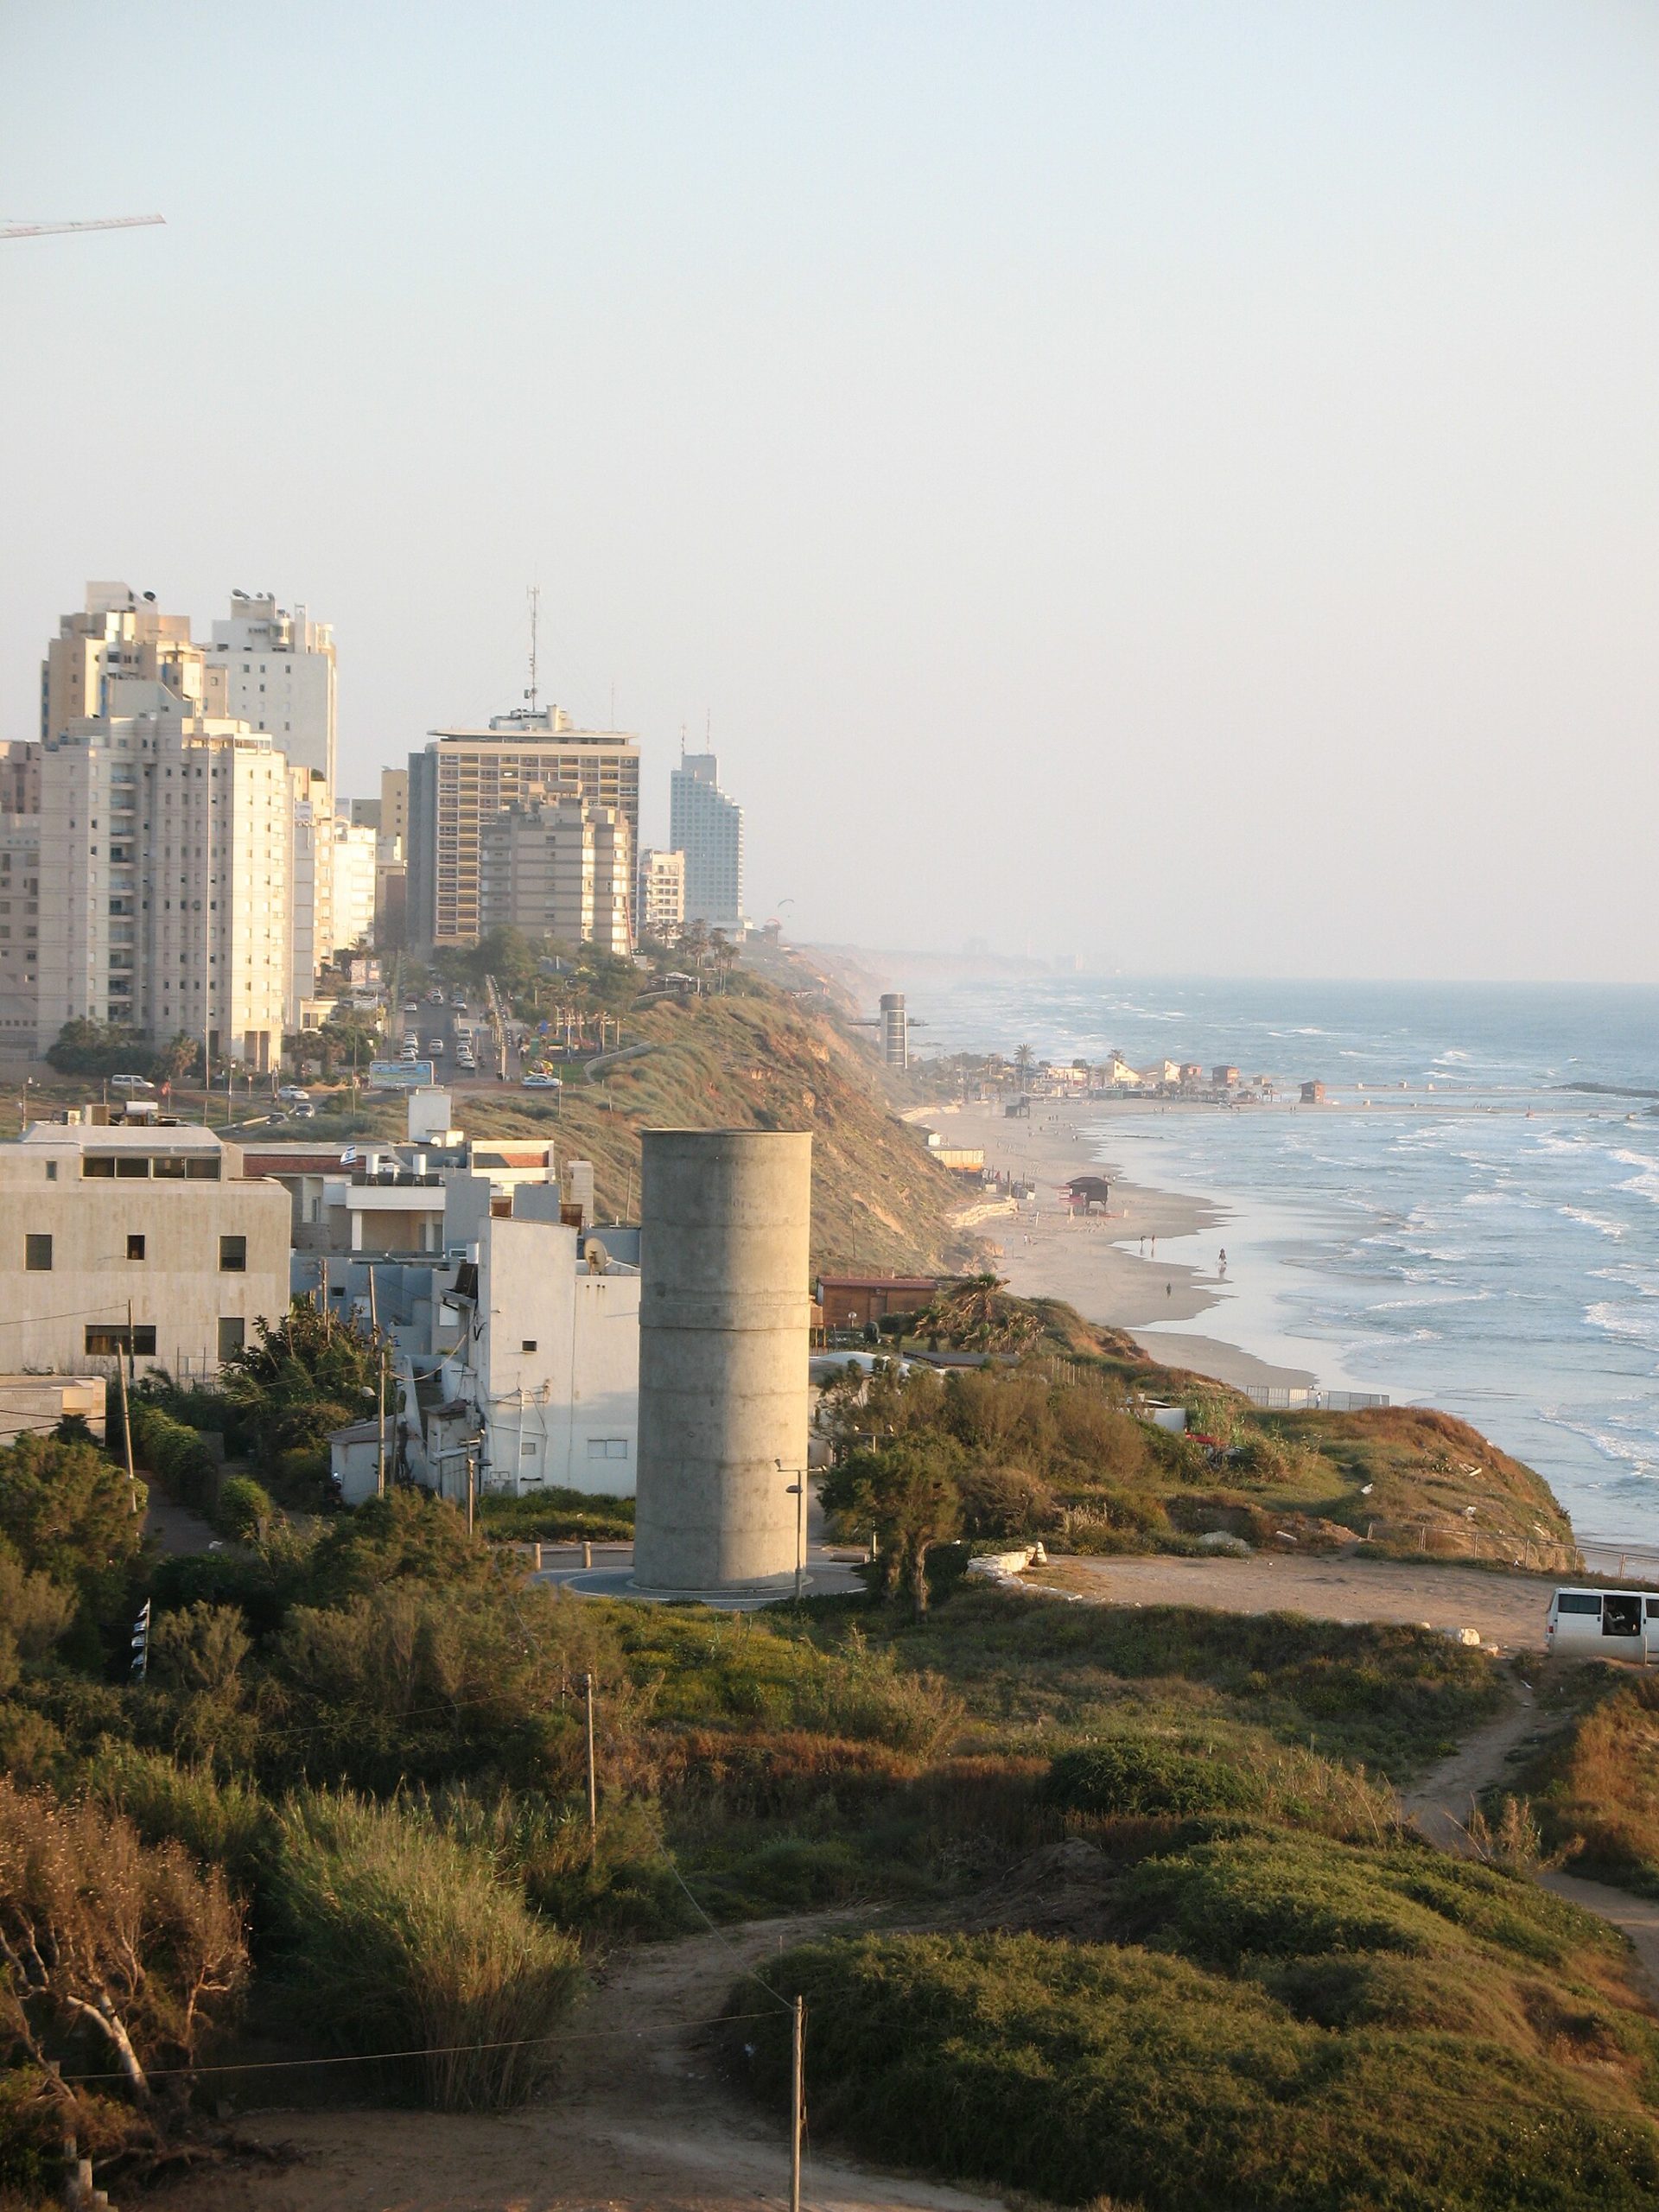 La playa de Netanya, Israel, ciudad costera que da sobre el Mar Mediterráneo. Foto: James Emery/Wikimedia Commons.